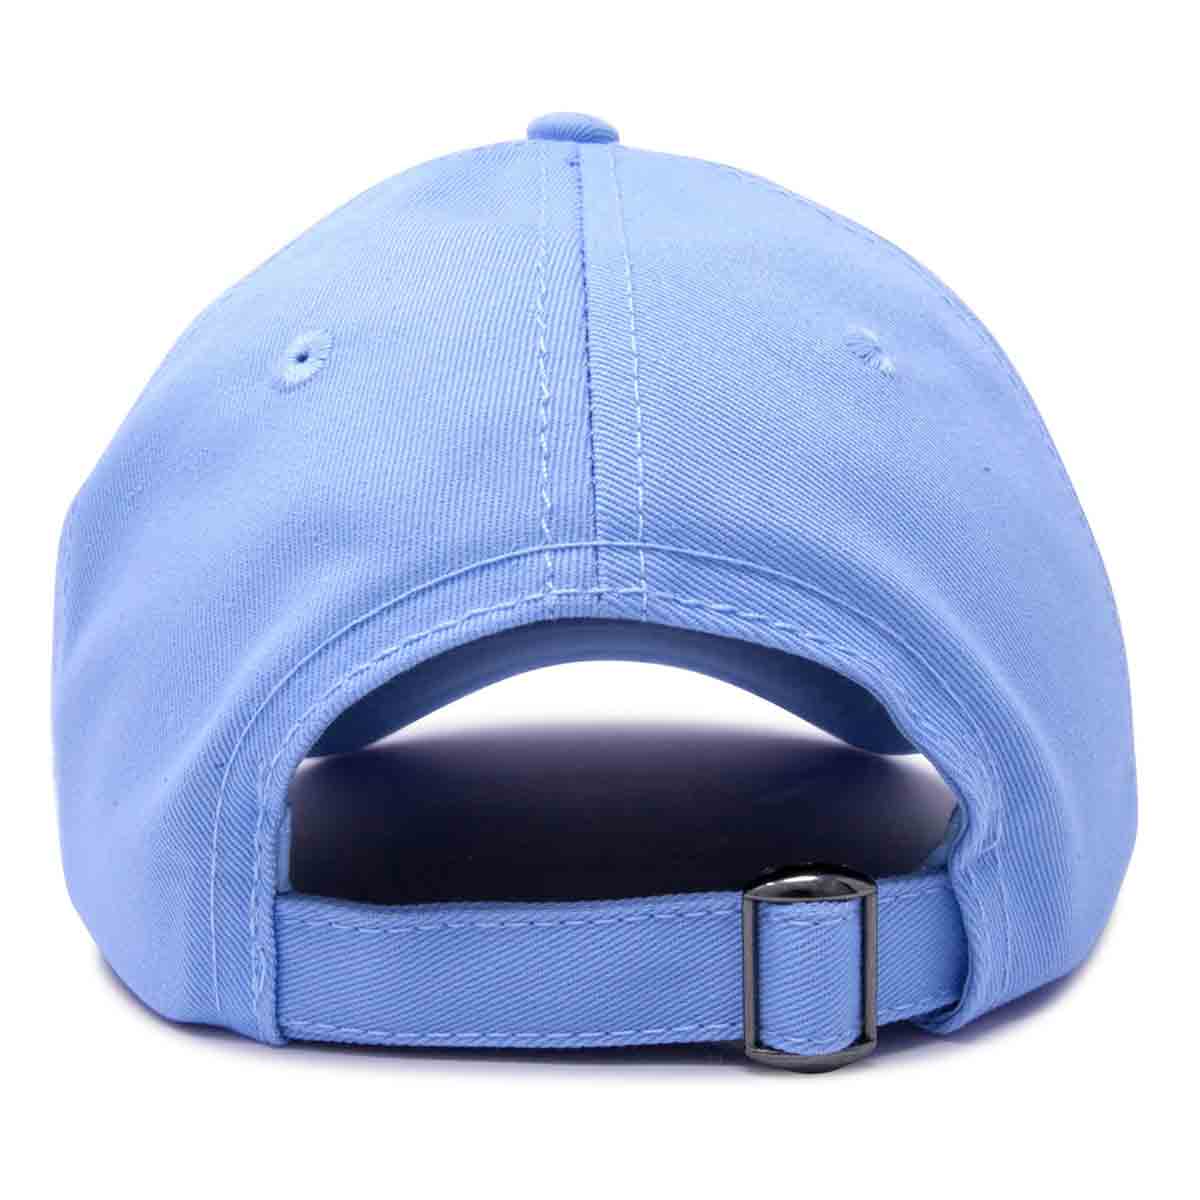 Dalix Jack-O-Lantern Hat